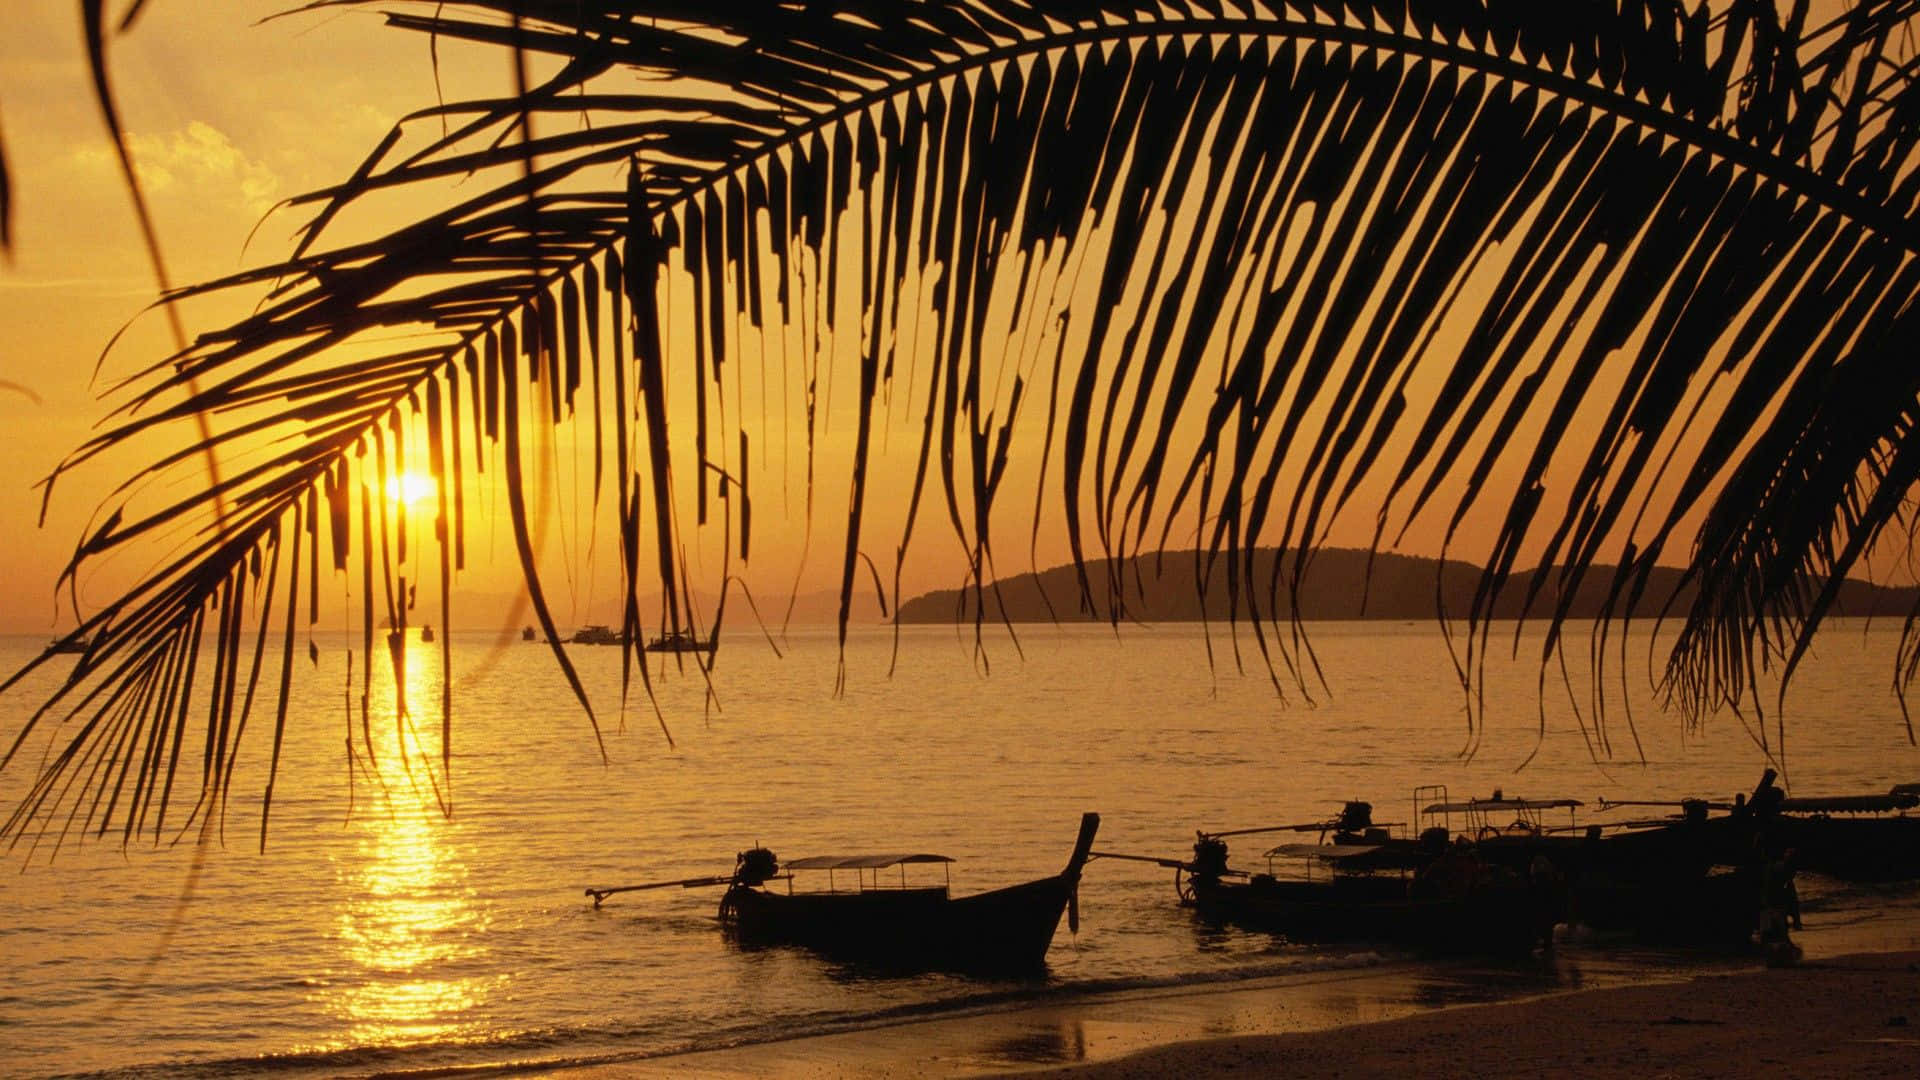 Impresionantevista De Una Hermosa Playa Tailandesa Al Atardecer Fondo de pantalla